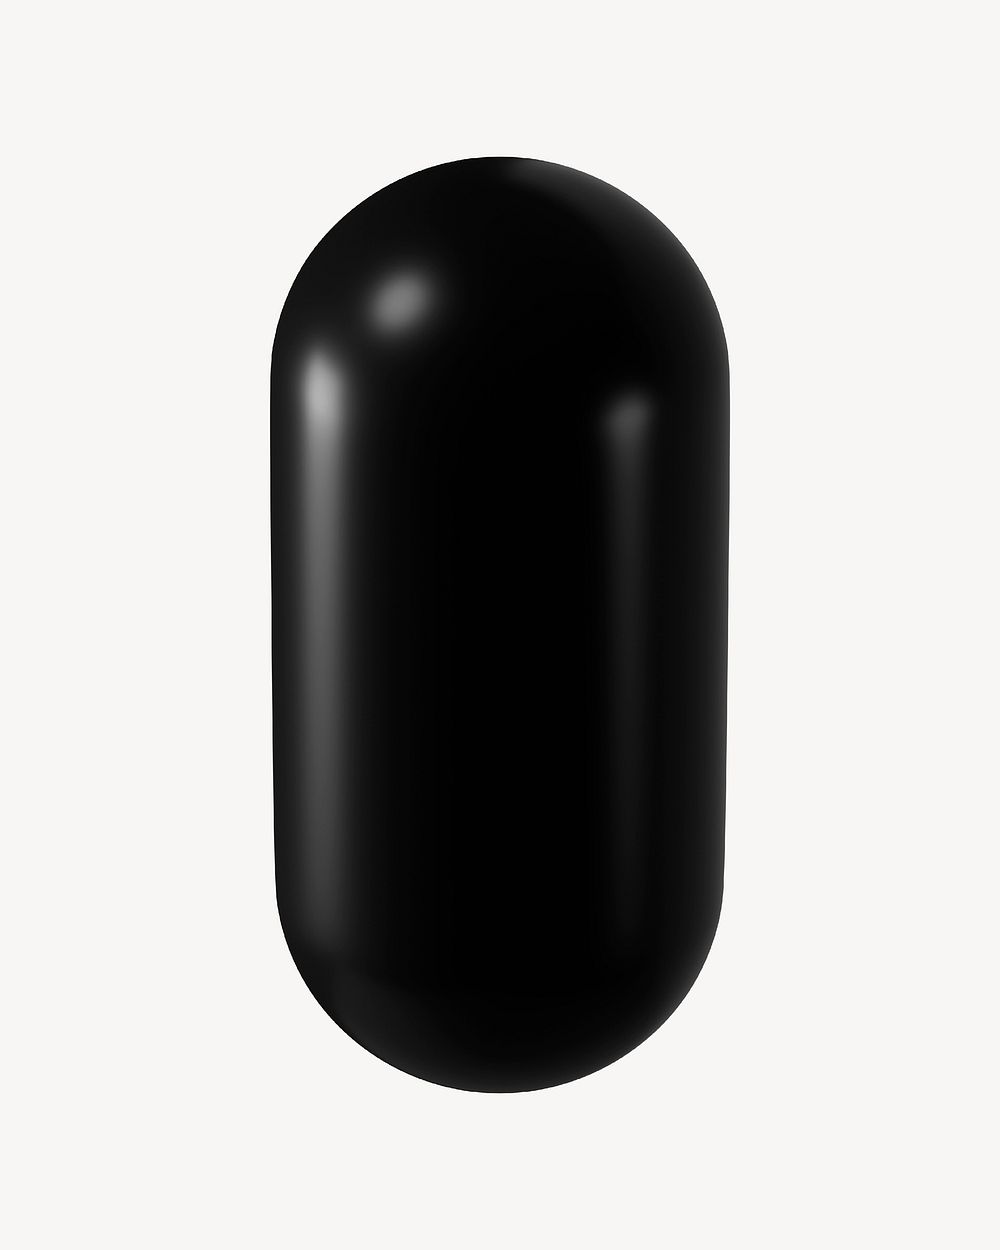 3D black capsule, geometric shape